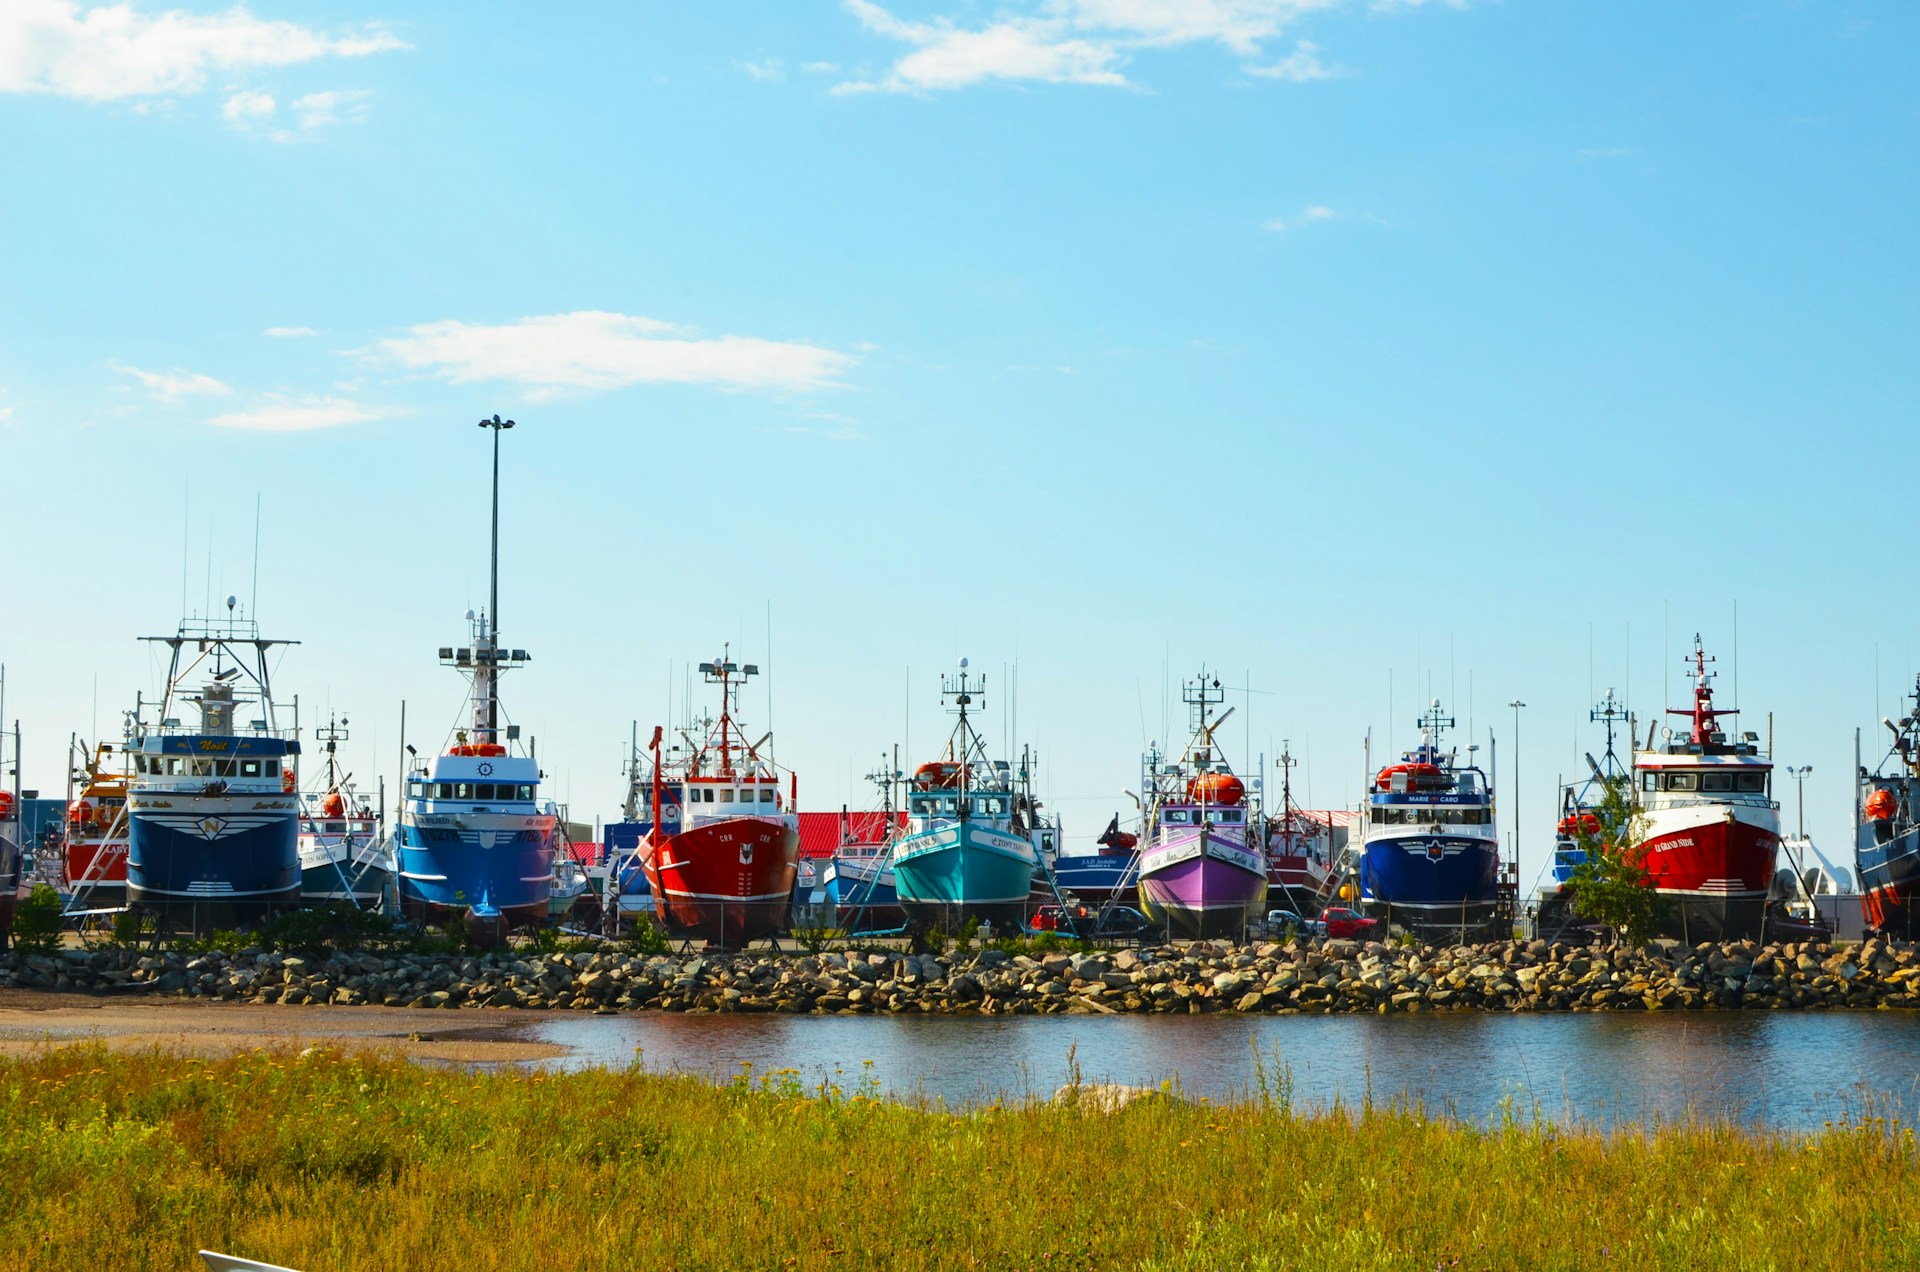 Le port de pêche de Shippagan, Acadie, Nouveau-Brunswick | © Photo de Leora Winter sur Unsplash